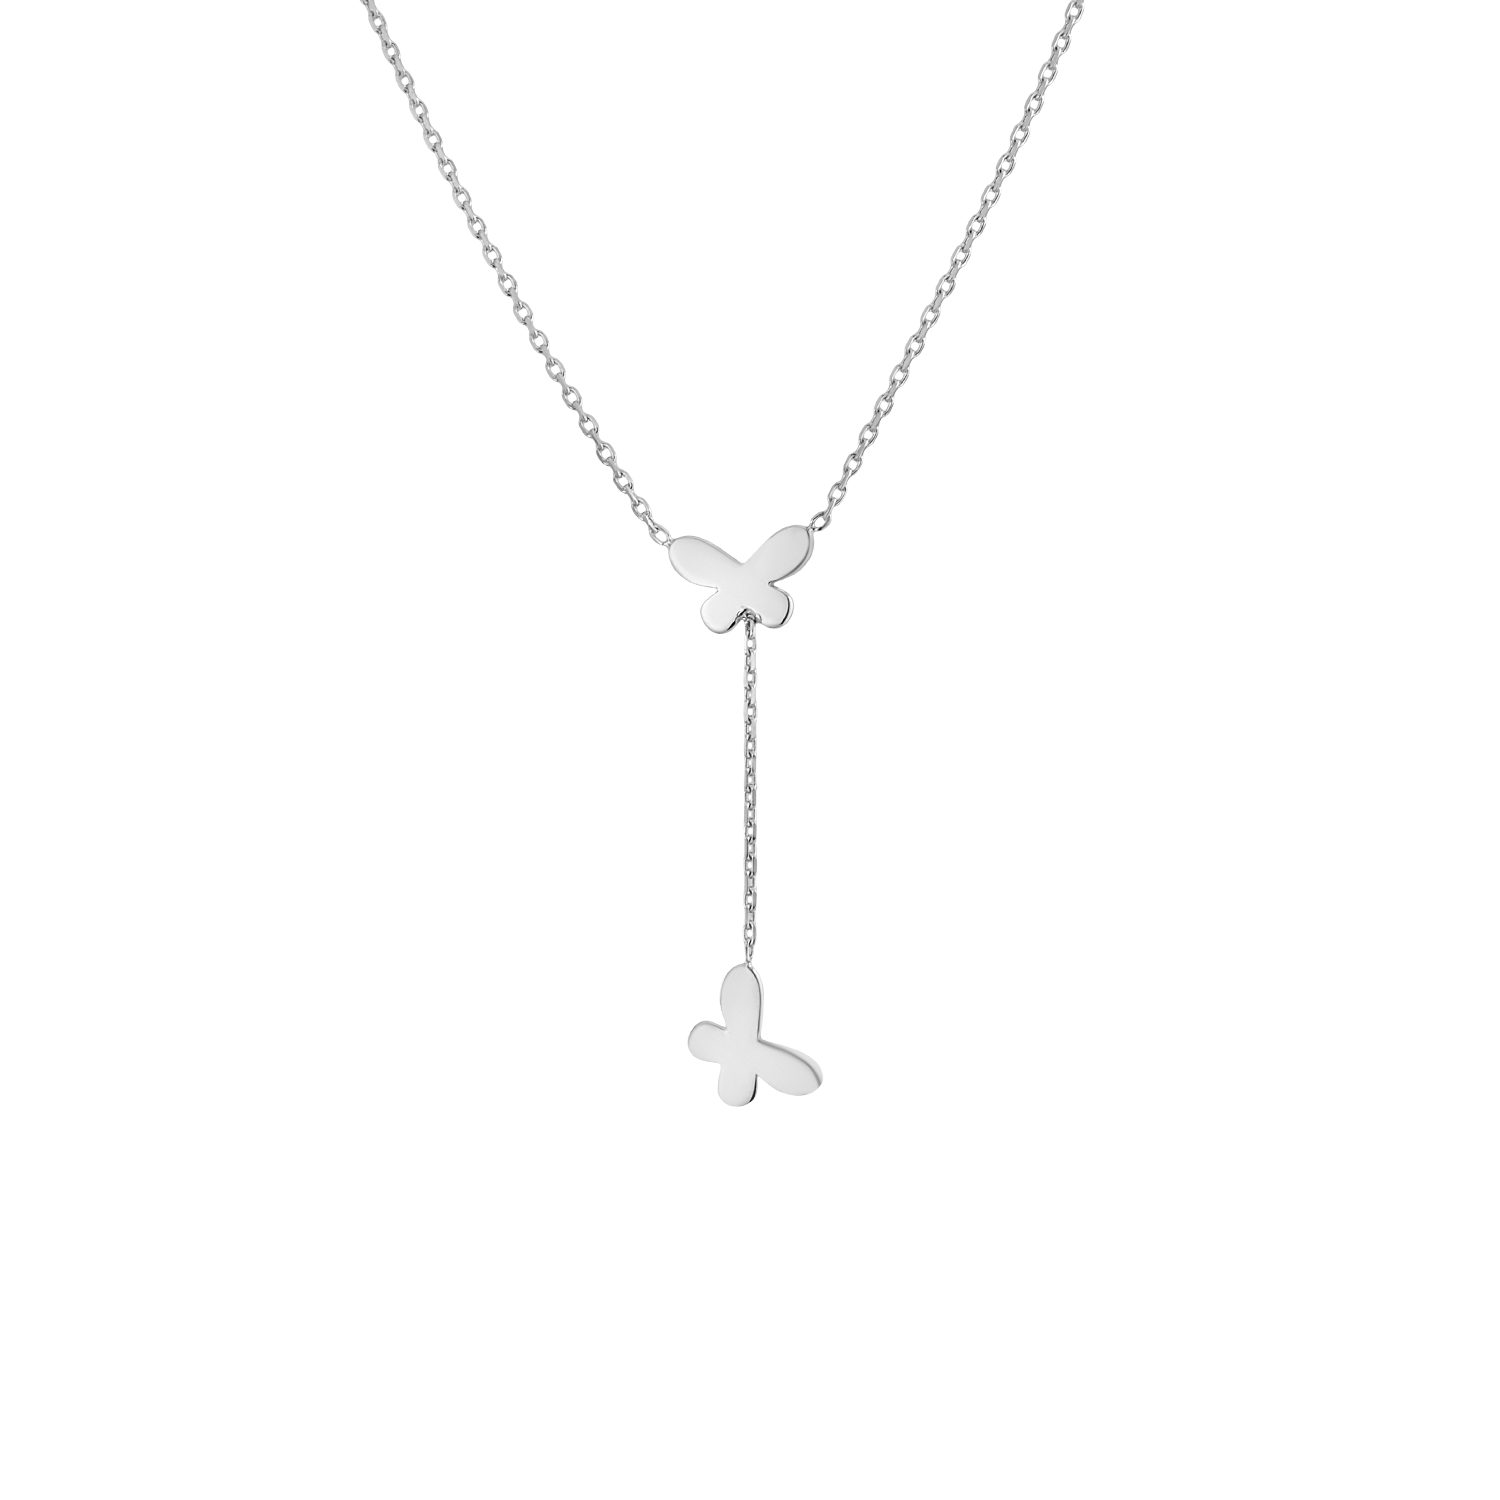 Secretforyou Collier Halskette Silberkette Collie Länge 40 cm Echtschmuck